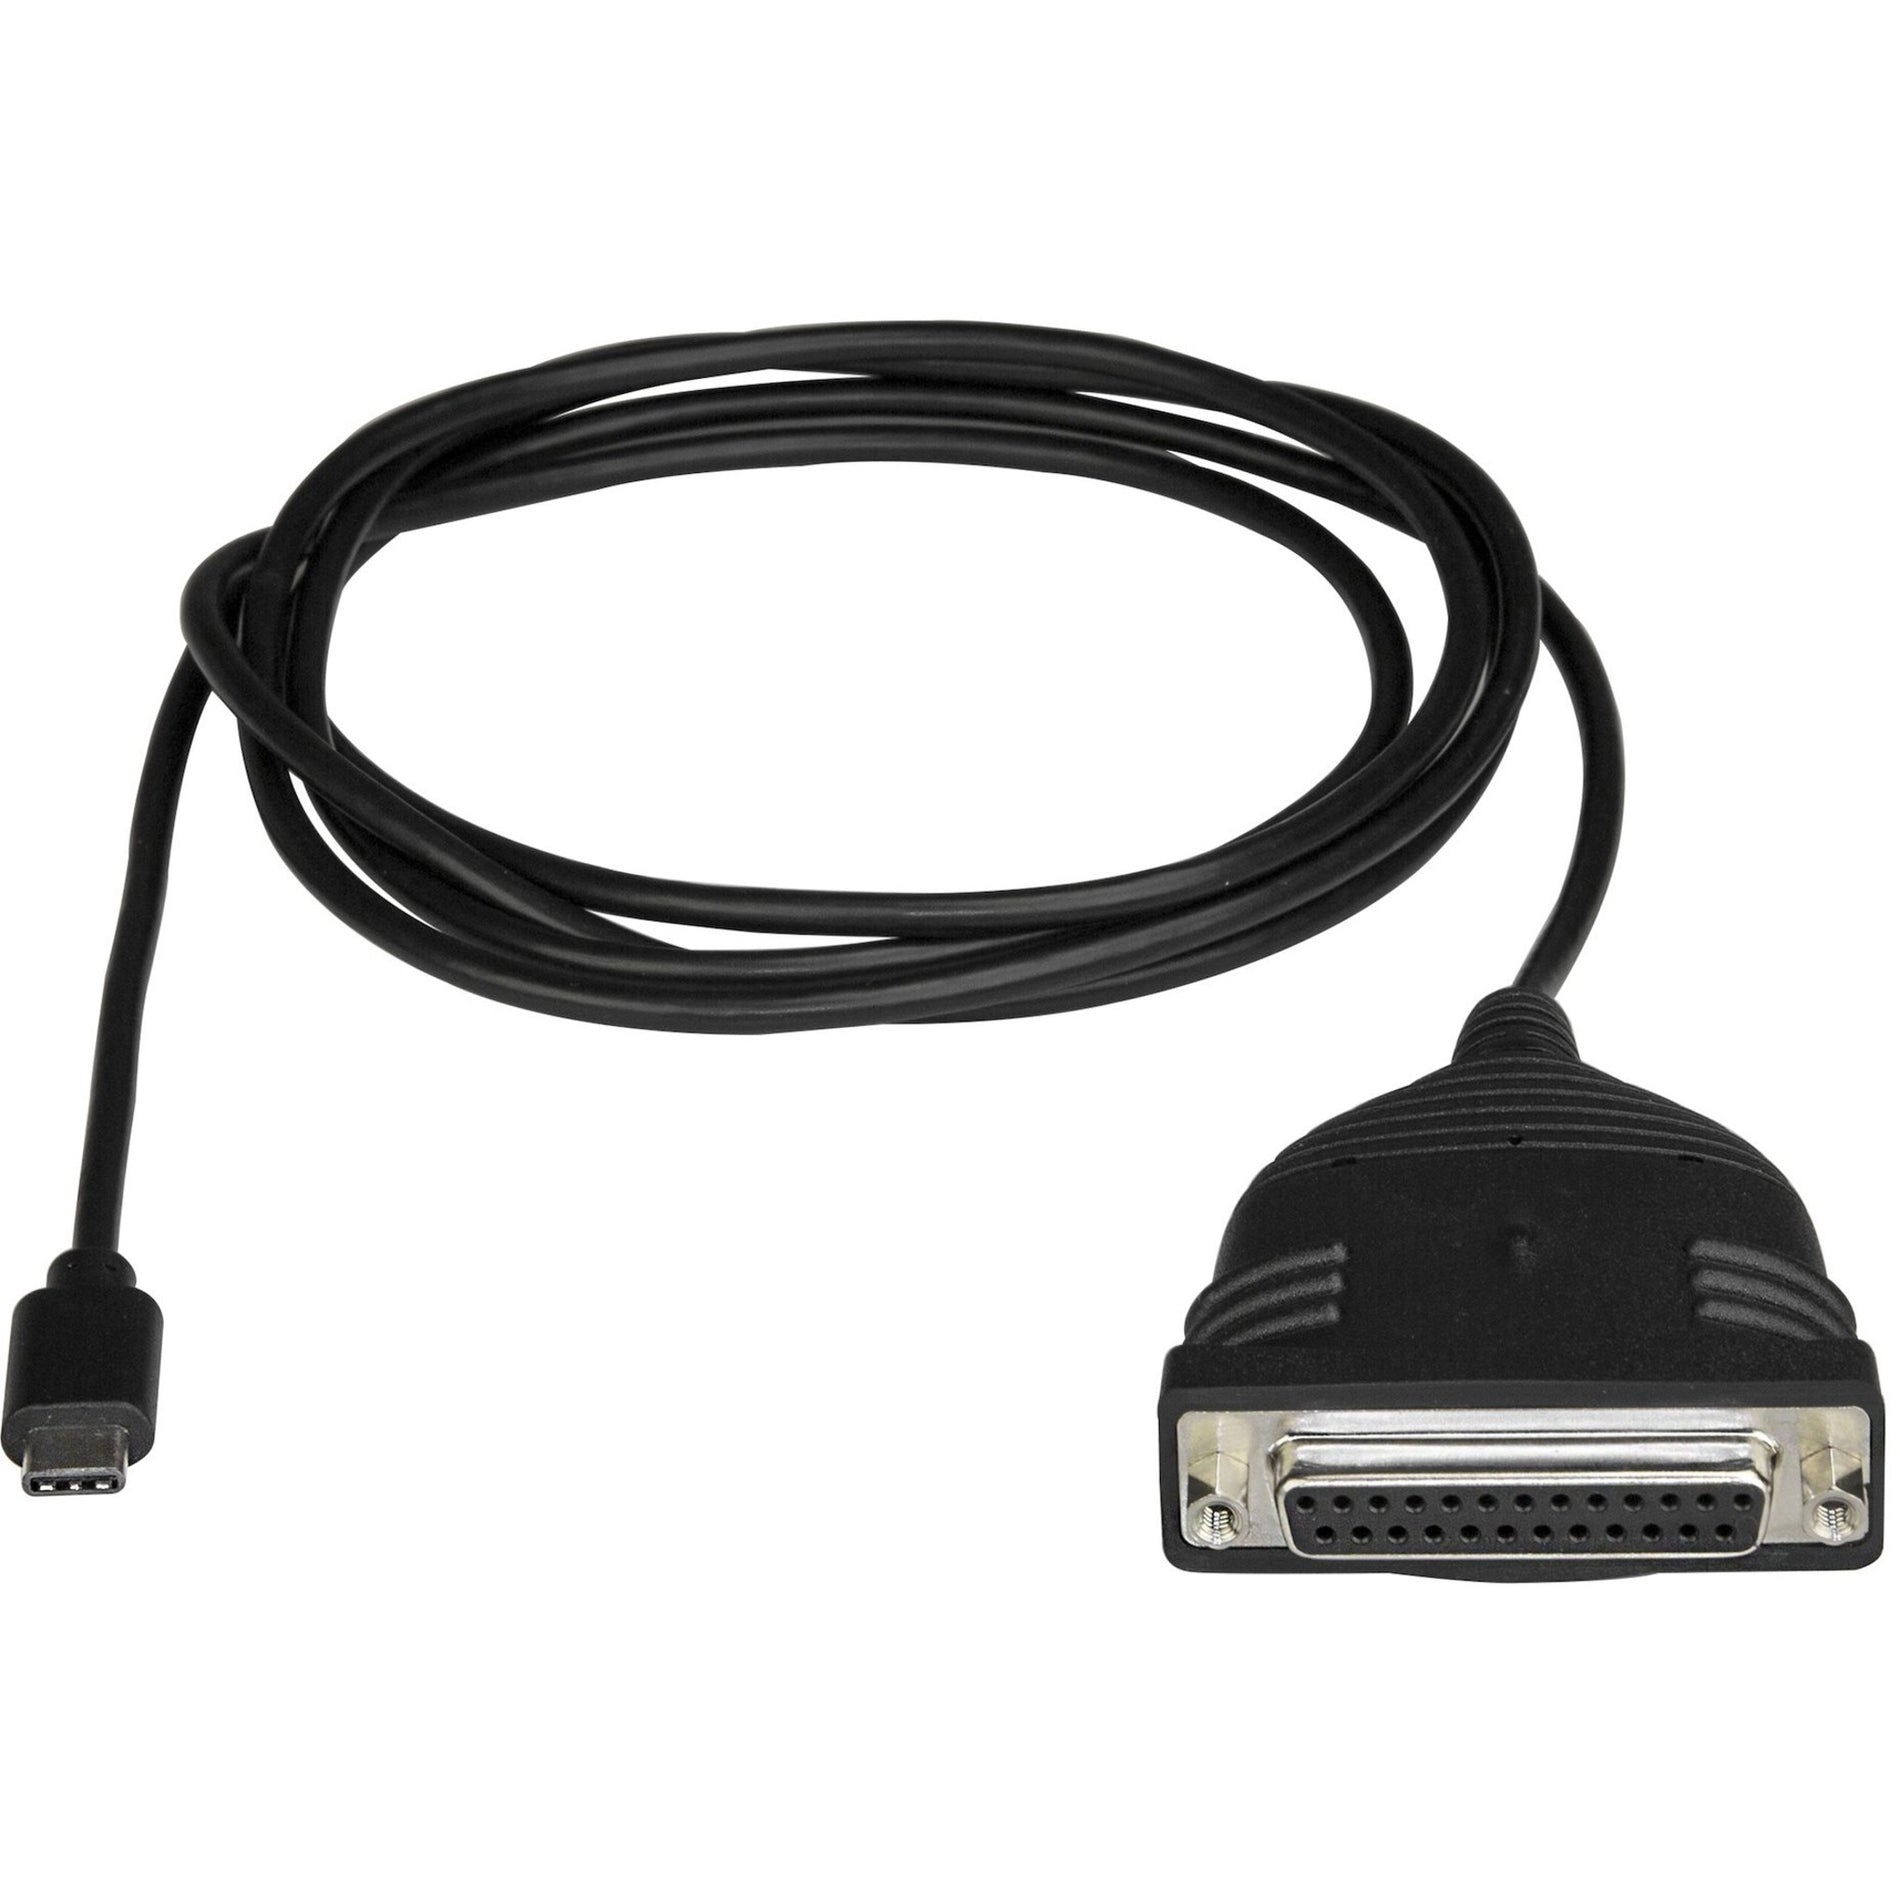 星特科（StarTech.com）ICUSBCPLLD25 平行/ USB 数据传输线，USB C 至 DB25 打印机线缆适配器，总线供电 星特科